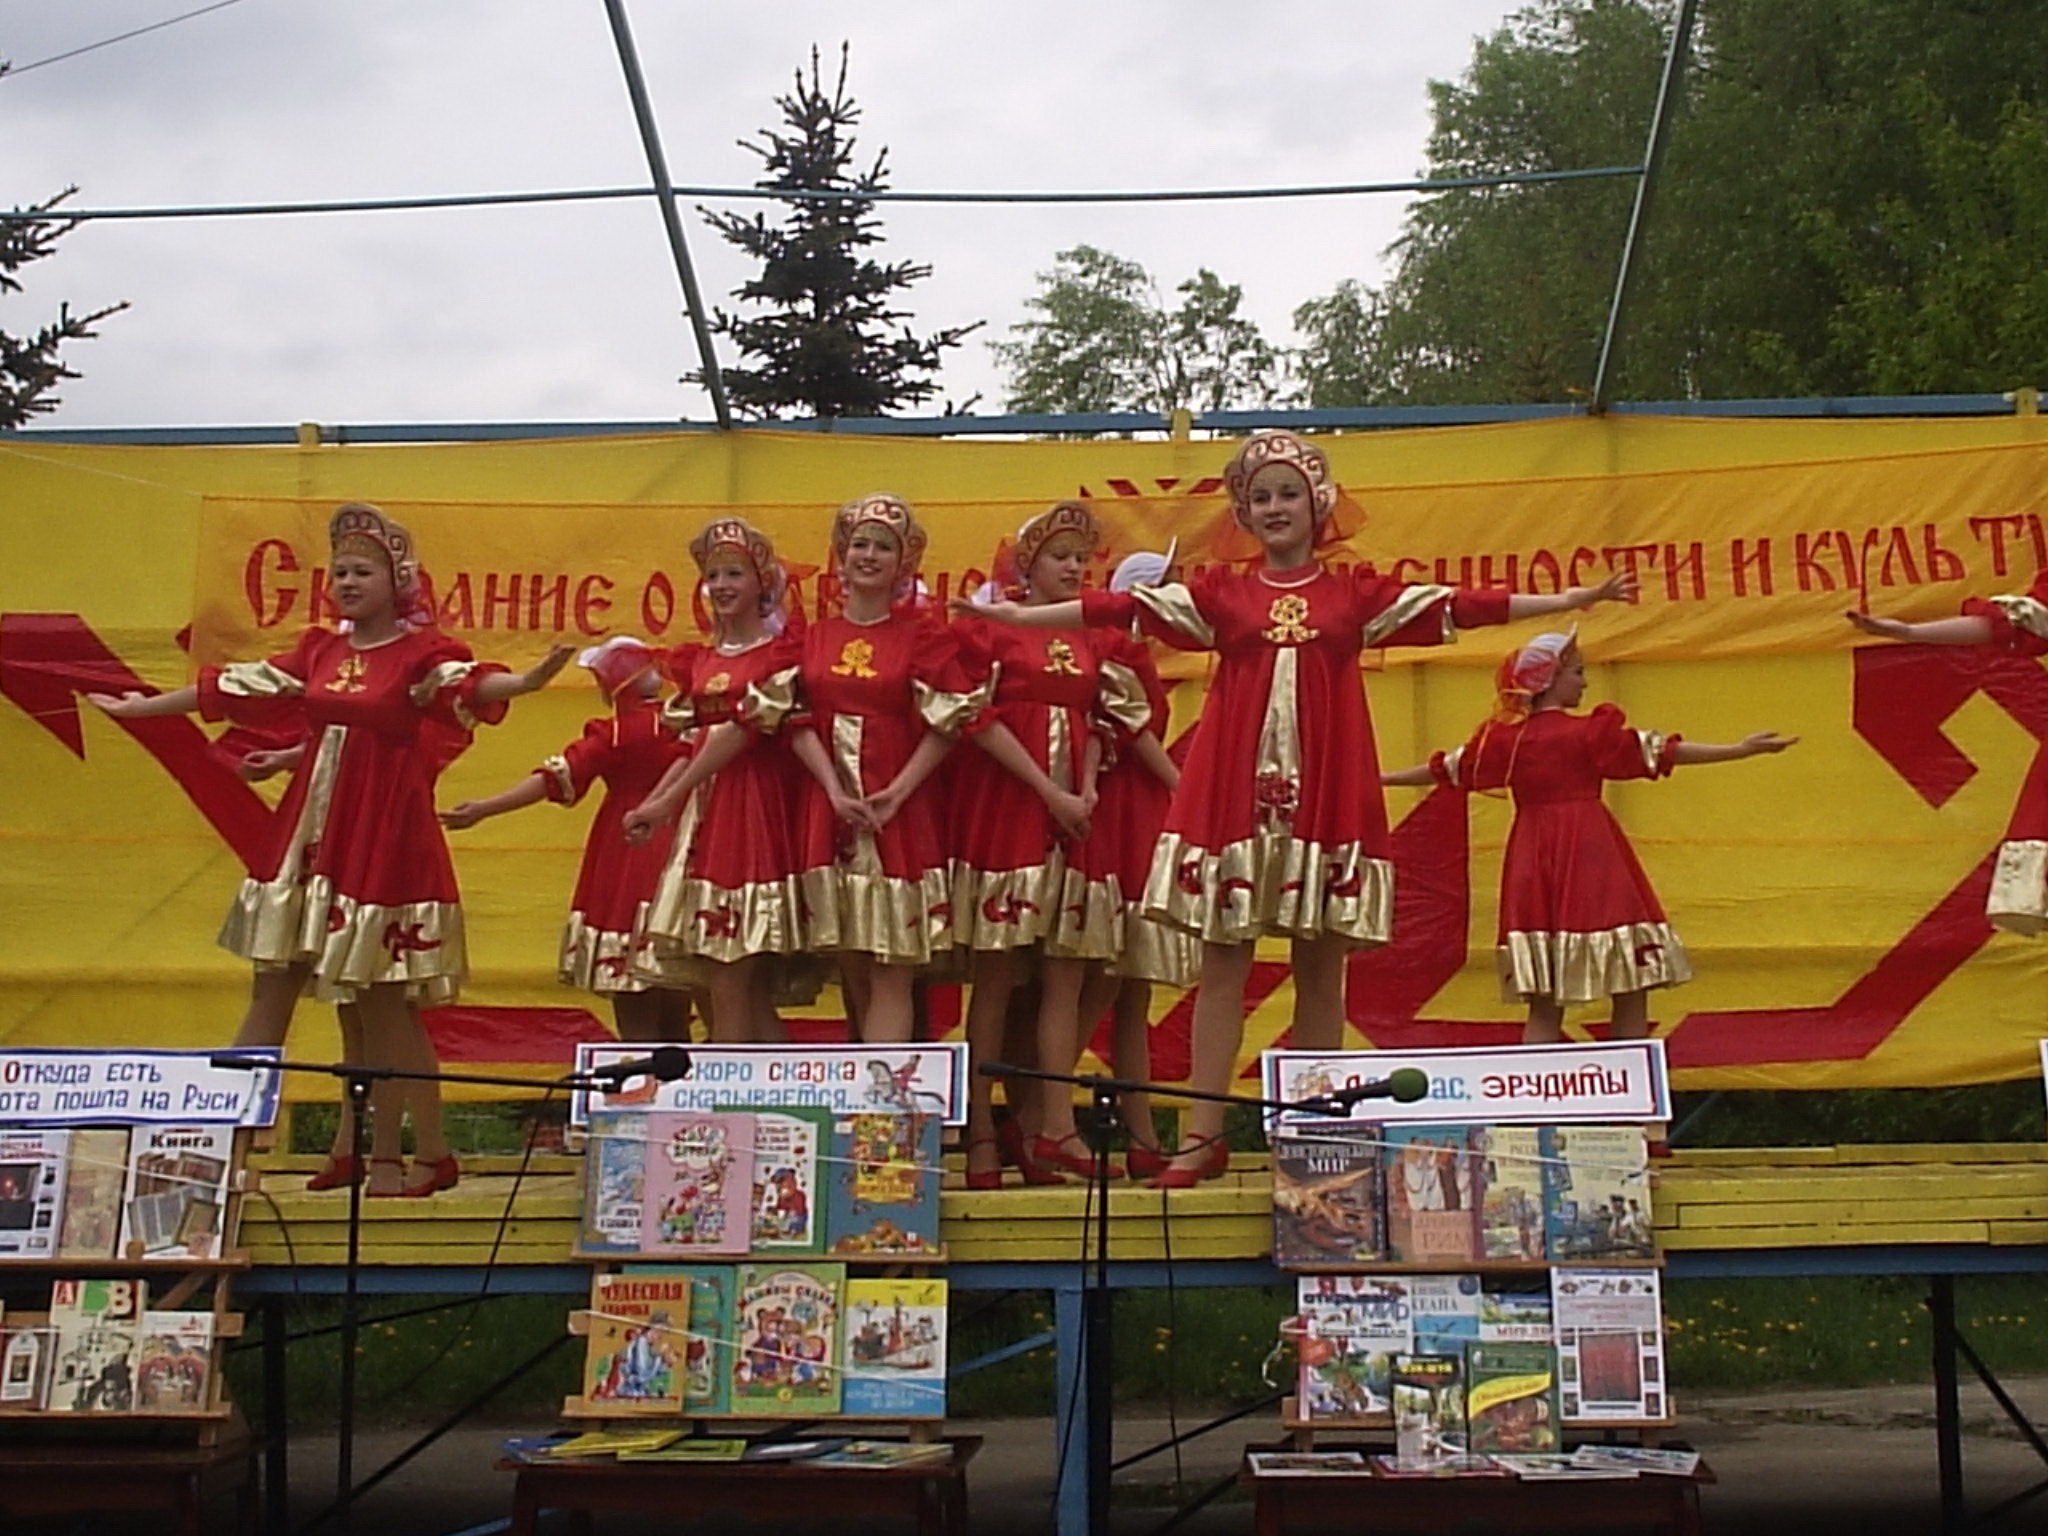 В Парке культуры и отдыха им. 500-летия г. Чебоксары состоялся праздник книги 